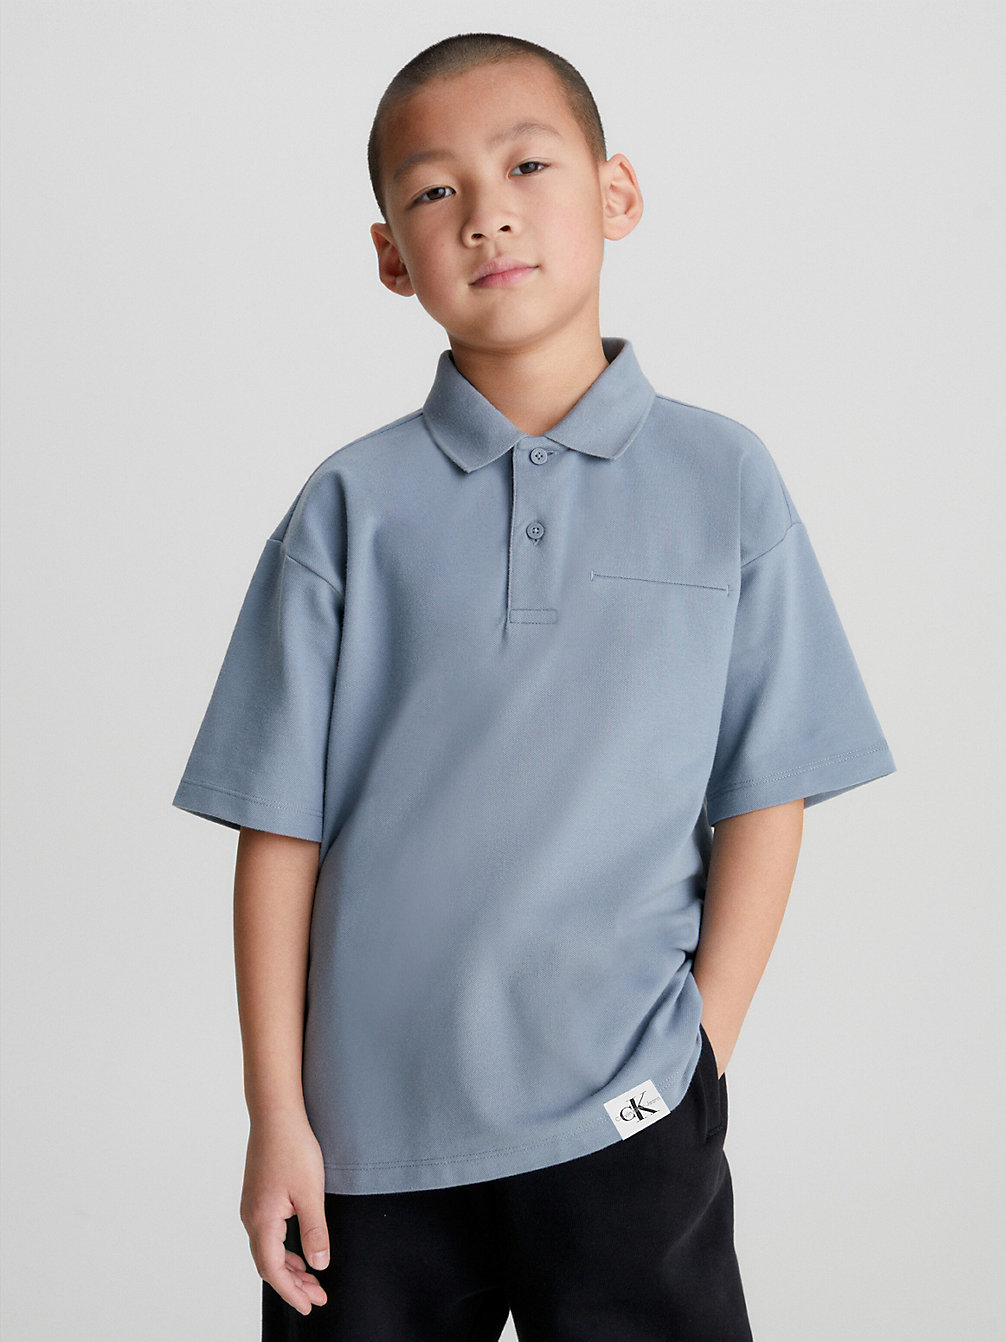 OVERCAST GREY Pique Polo Shirt undefined boys Calvin Klein